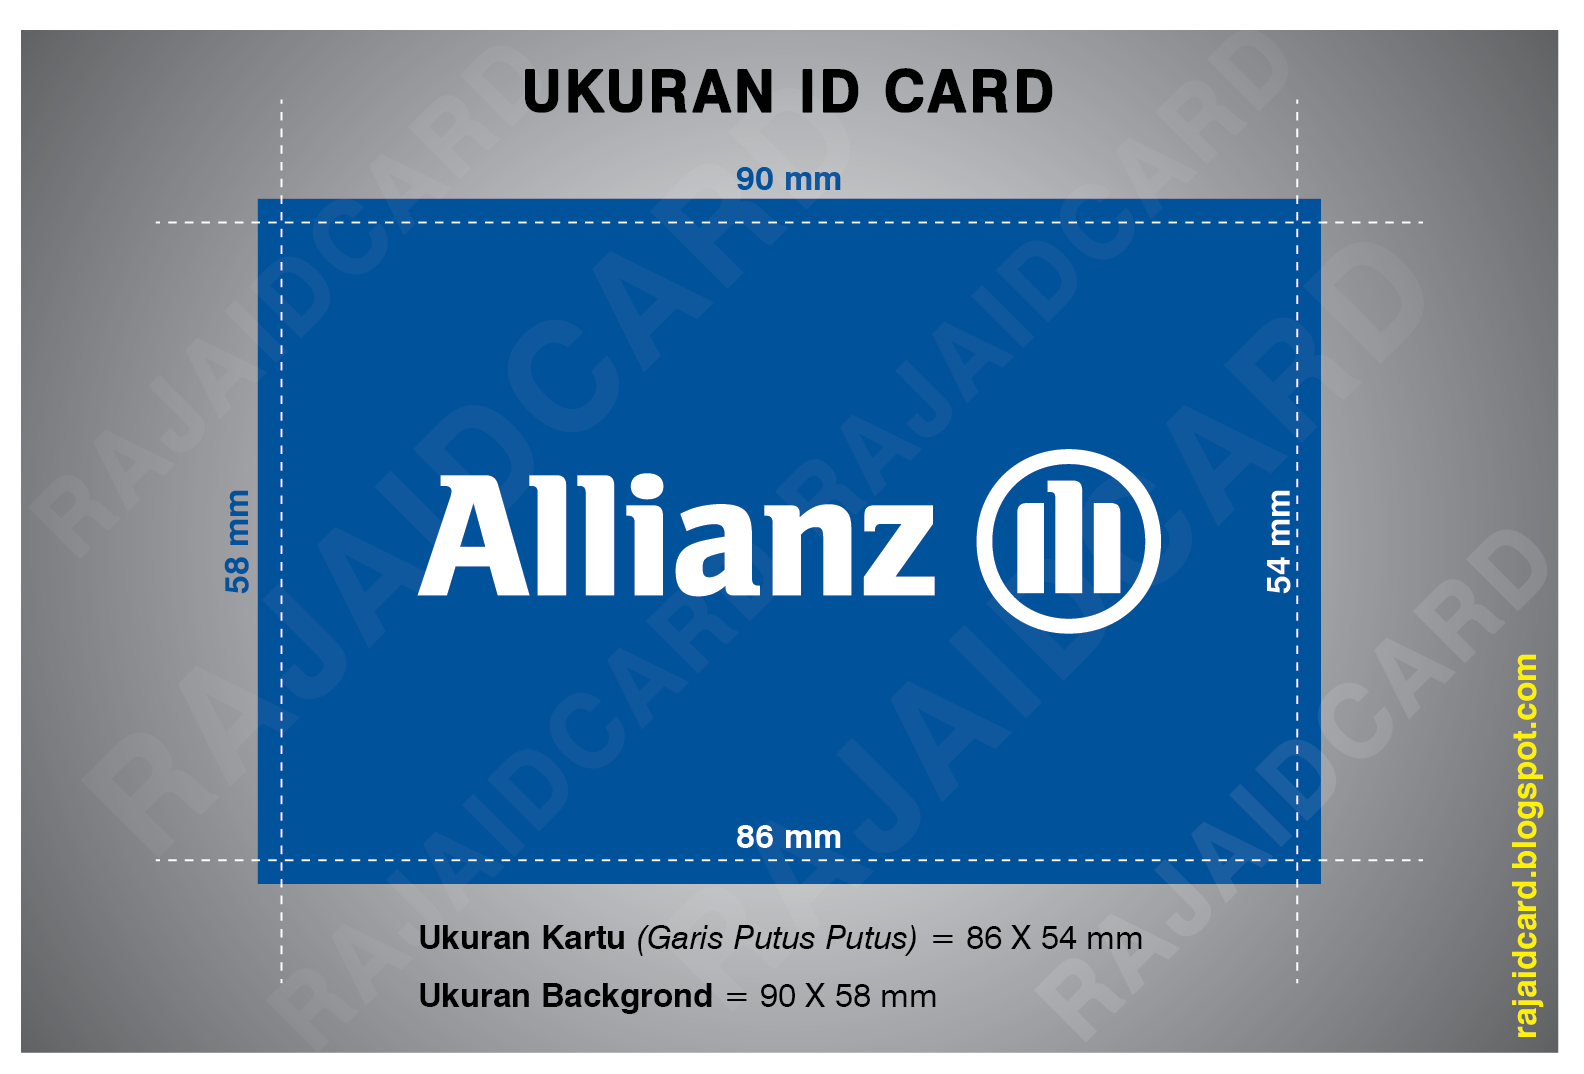 RAJA ID CARD Pusat Buat,Jual, Cetak,Bikin ID Card Murah Online: Ukuran